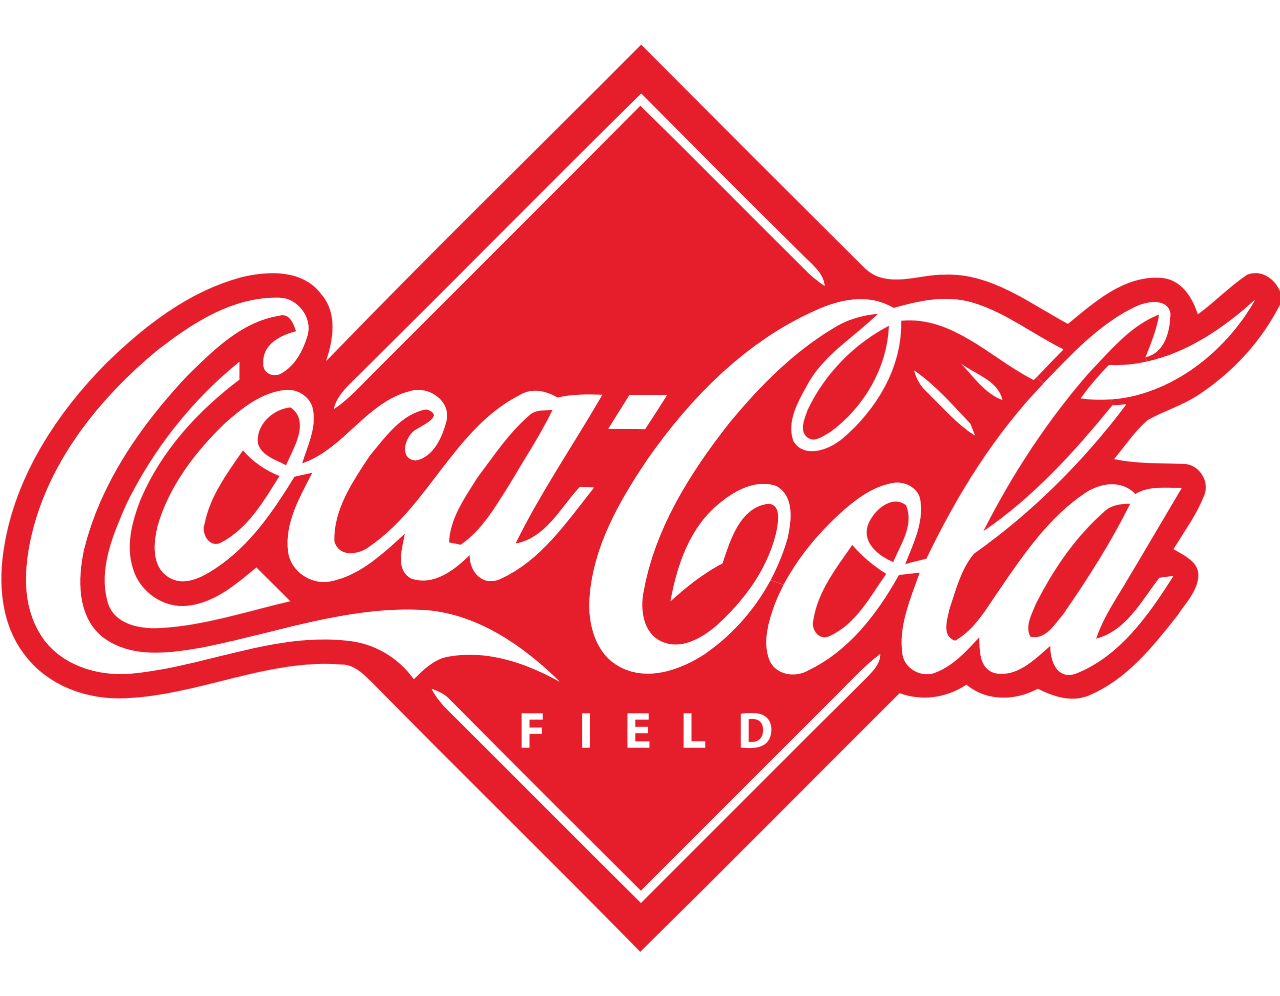 The Coca-Cola Logo- a designers dream - Works Design Group